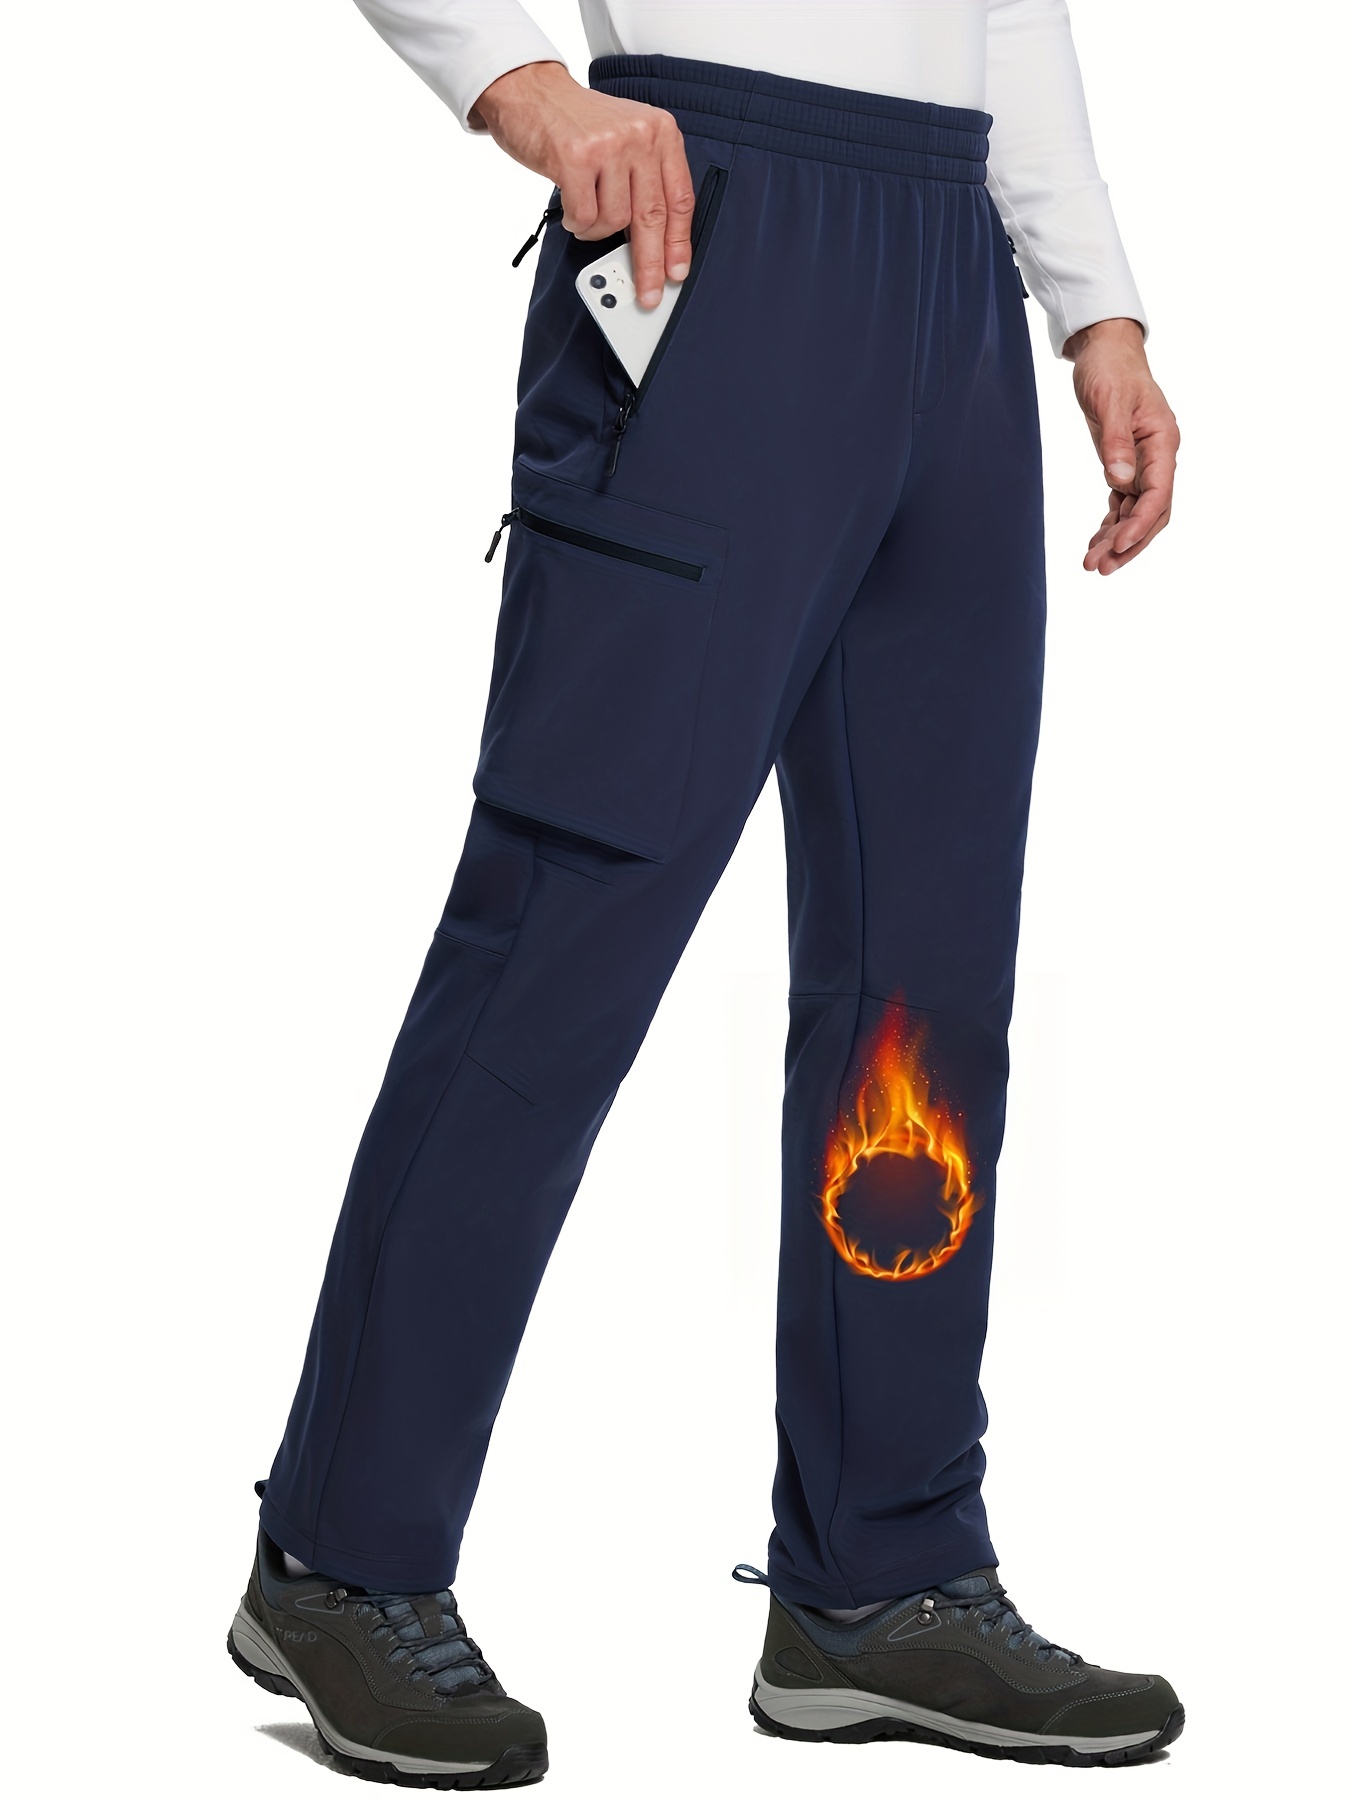 BALEAF Women's Fleece Lined Pants Sweatpants Warm Zipper Pockets